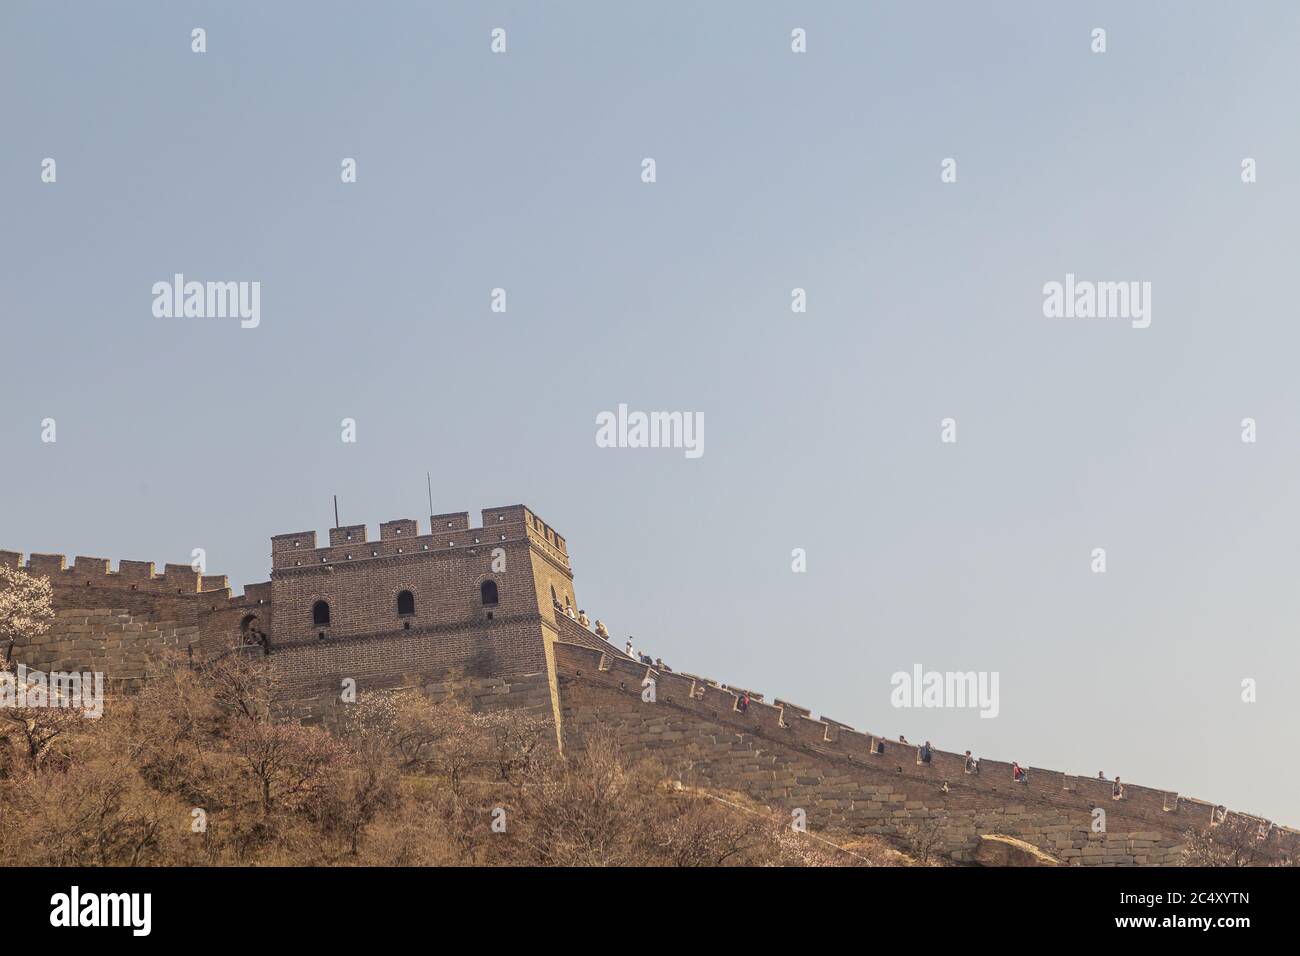 Peking, China - UM 2020: Große Mauer von China in einer grünen Waldlandschaft bei Mutianyu im Huairou Bezirk bei Peking, China. Herbstansicht von Rost Stockfoto